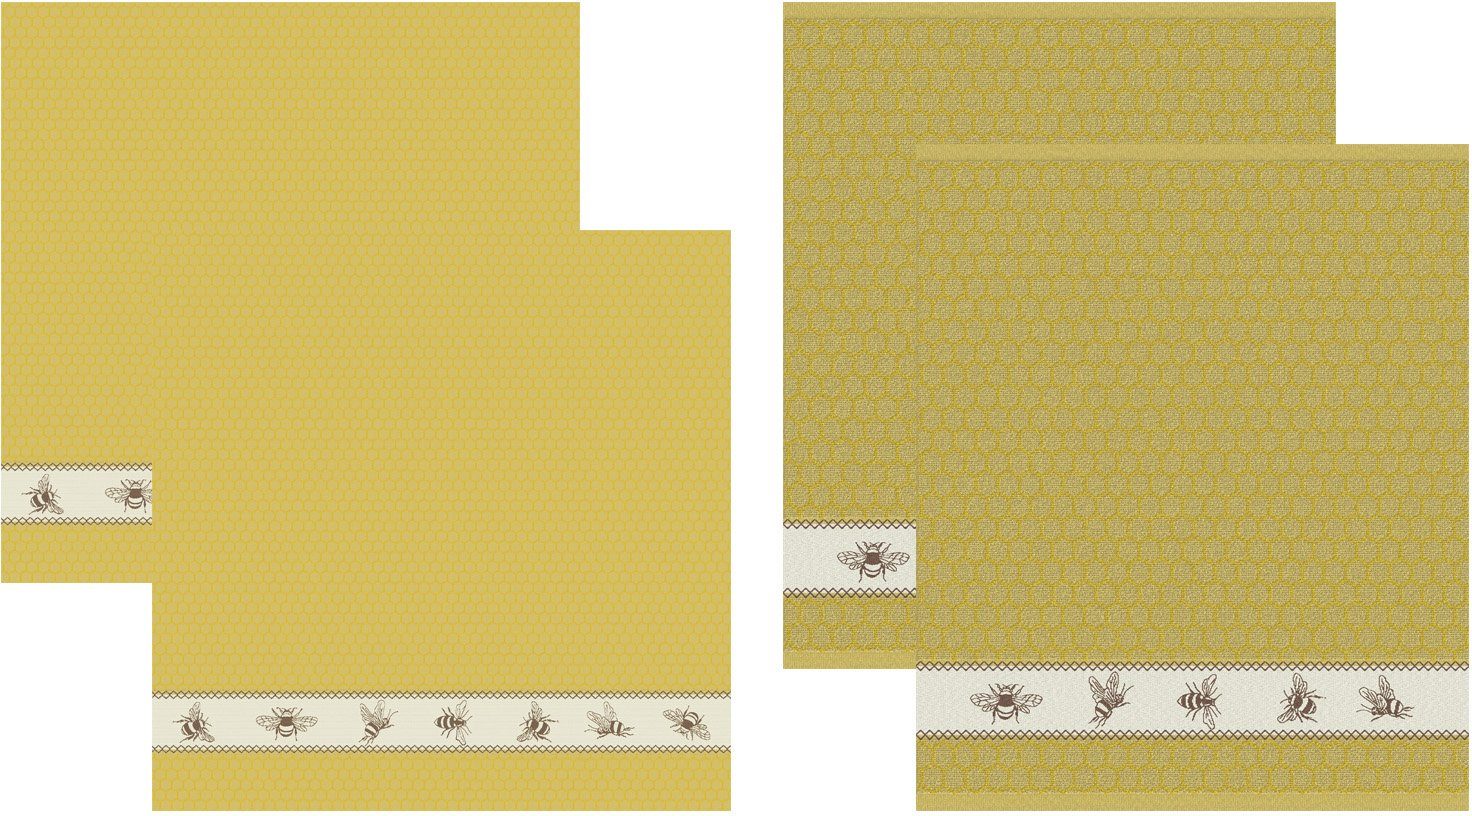 Küchentuch gelb/naturweiß/braun + Bees, (Set, 2x DDDDD aus bestehend Combi-Set: Geschirrtuch 2x 4-tlg., Geschirrtuch)